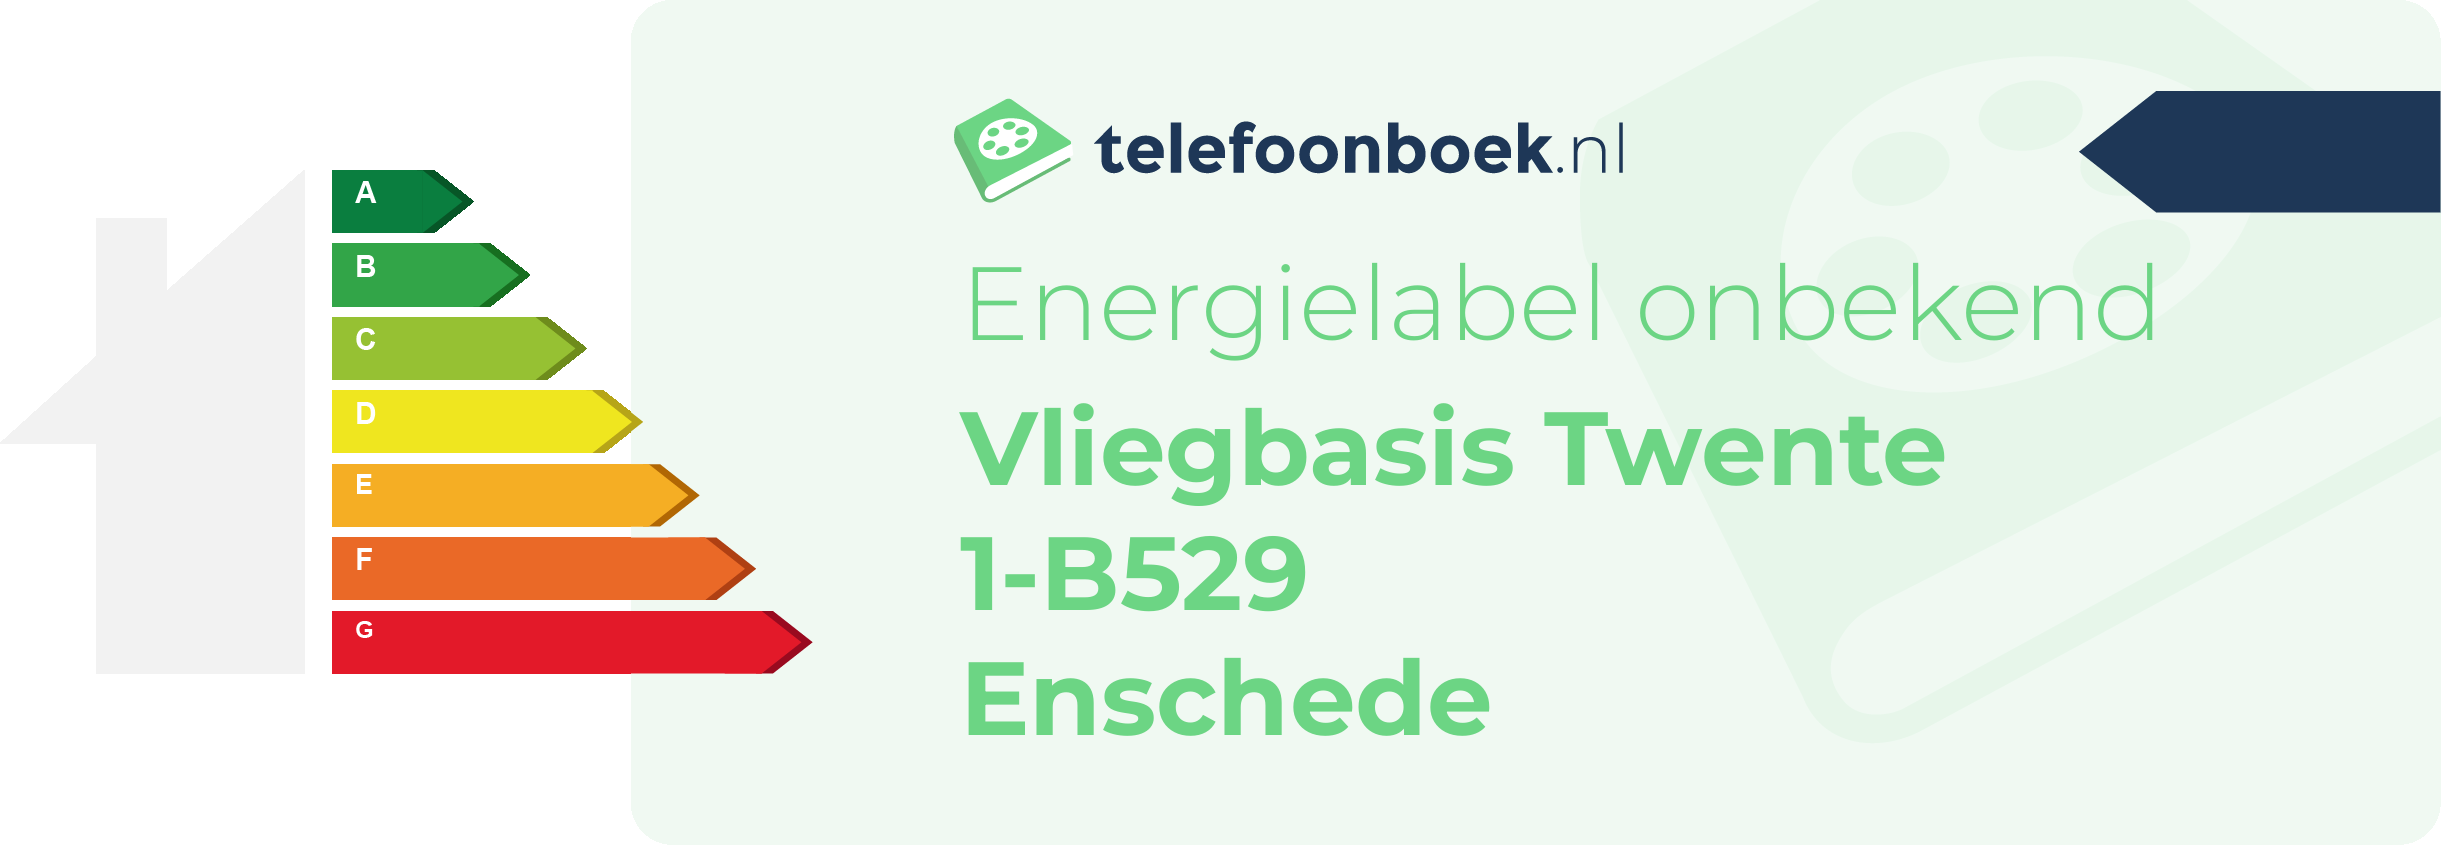 Energielabel Vliegbasis Twente 1-B529 Enschede